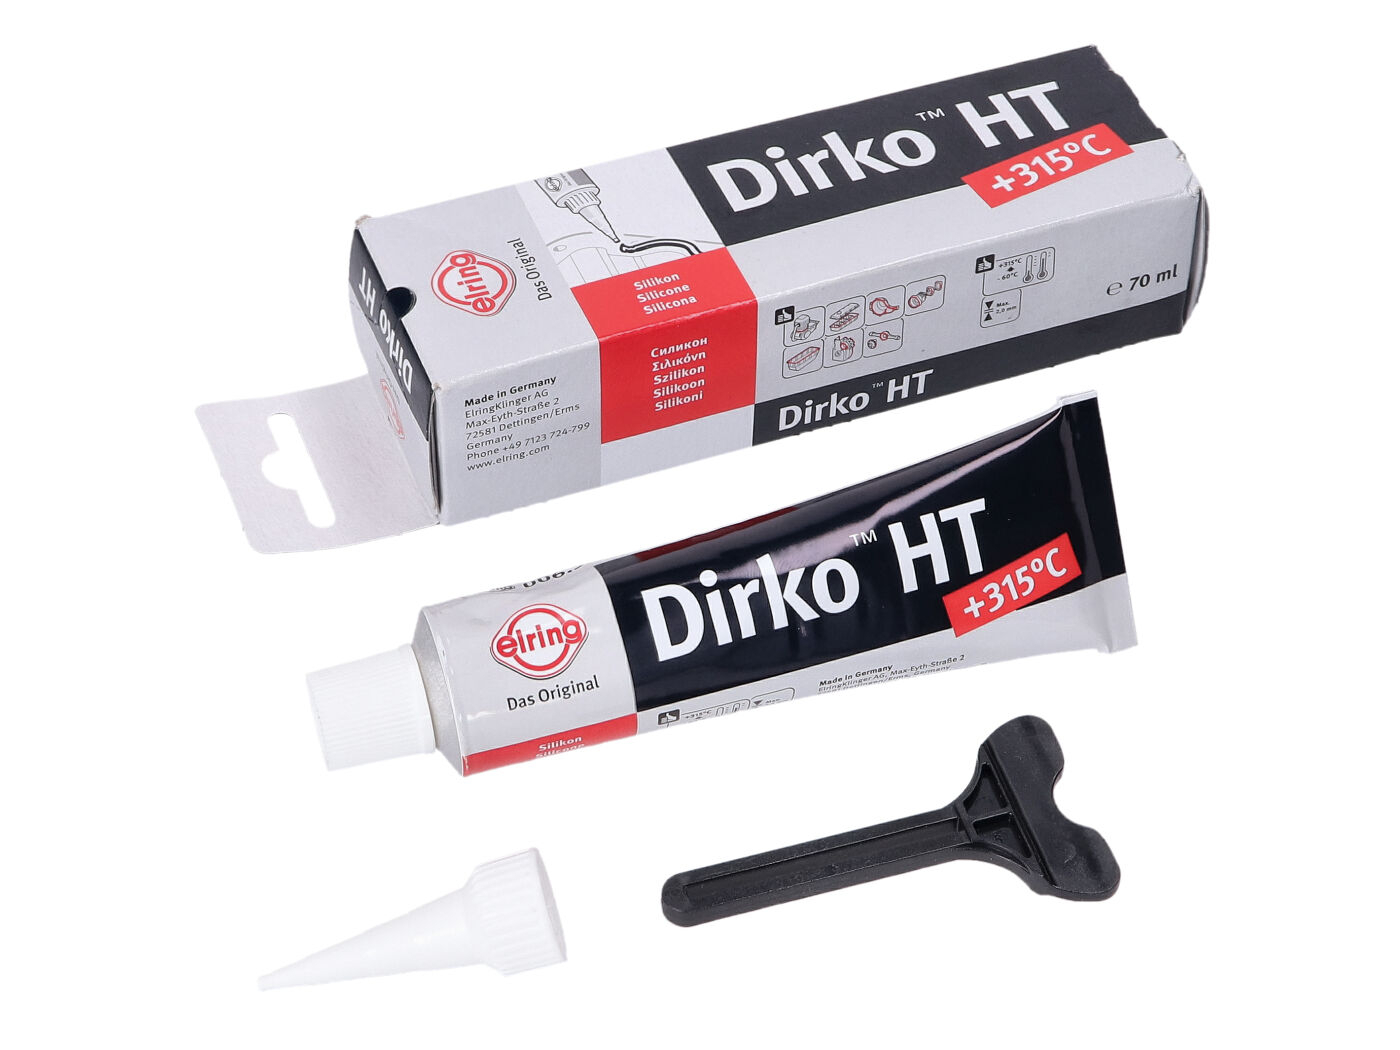 Sealant Dirko HT Silicone Black +315°C 70ml